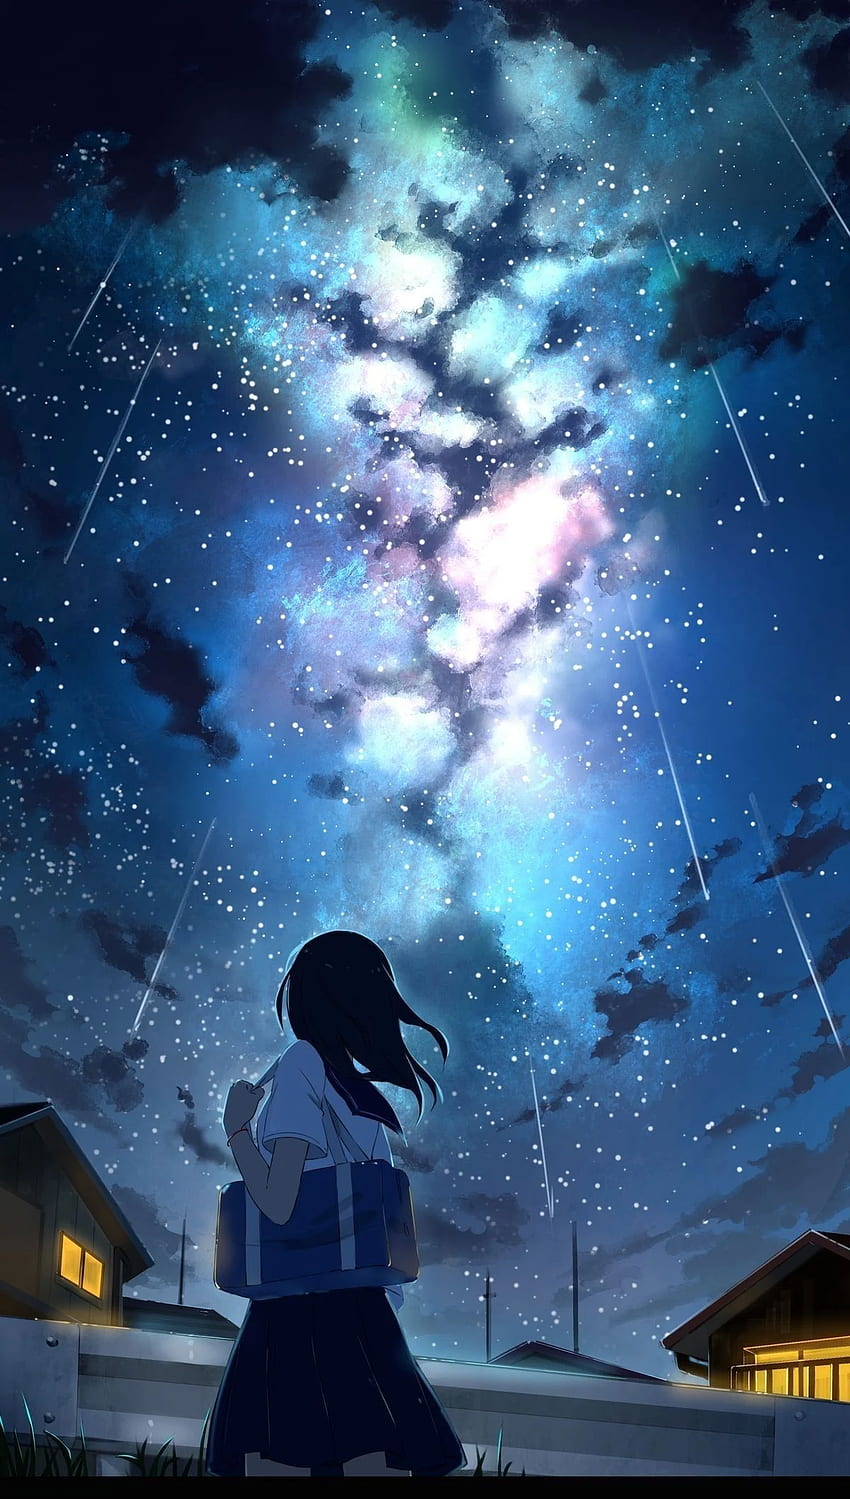 Hình nền anime không gian là một sự kết hợp hoàn hảo giữa vũ trụ và trái đất với các nhân vật hoạt hình đầy ma lực. Hãy tưởng tượng mình đang bay trên mây và chinh phục những thử thách trong cuộc phiêu lưu của riêng mình với hình nền anime không gian này.